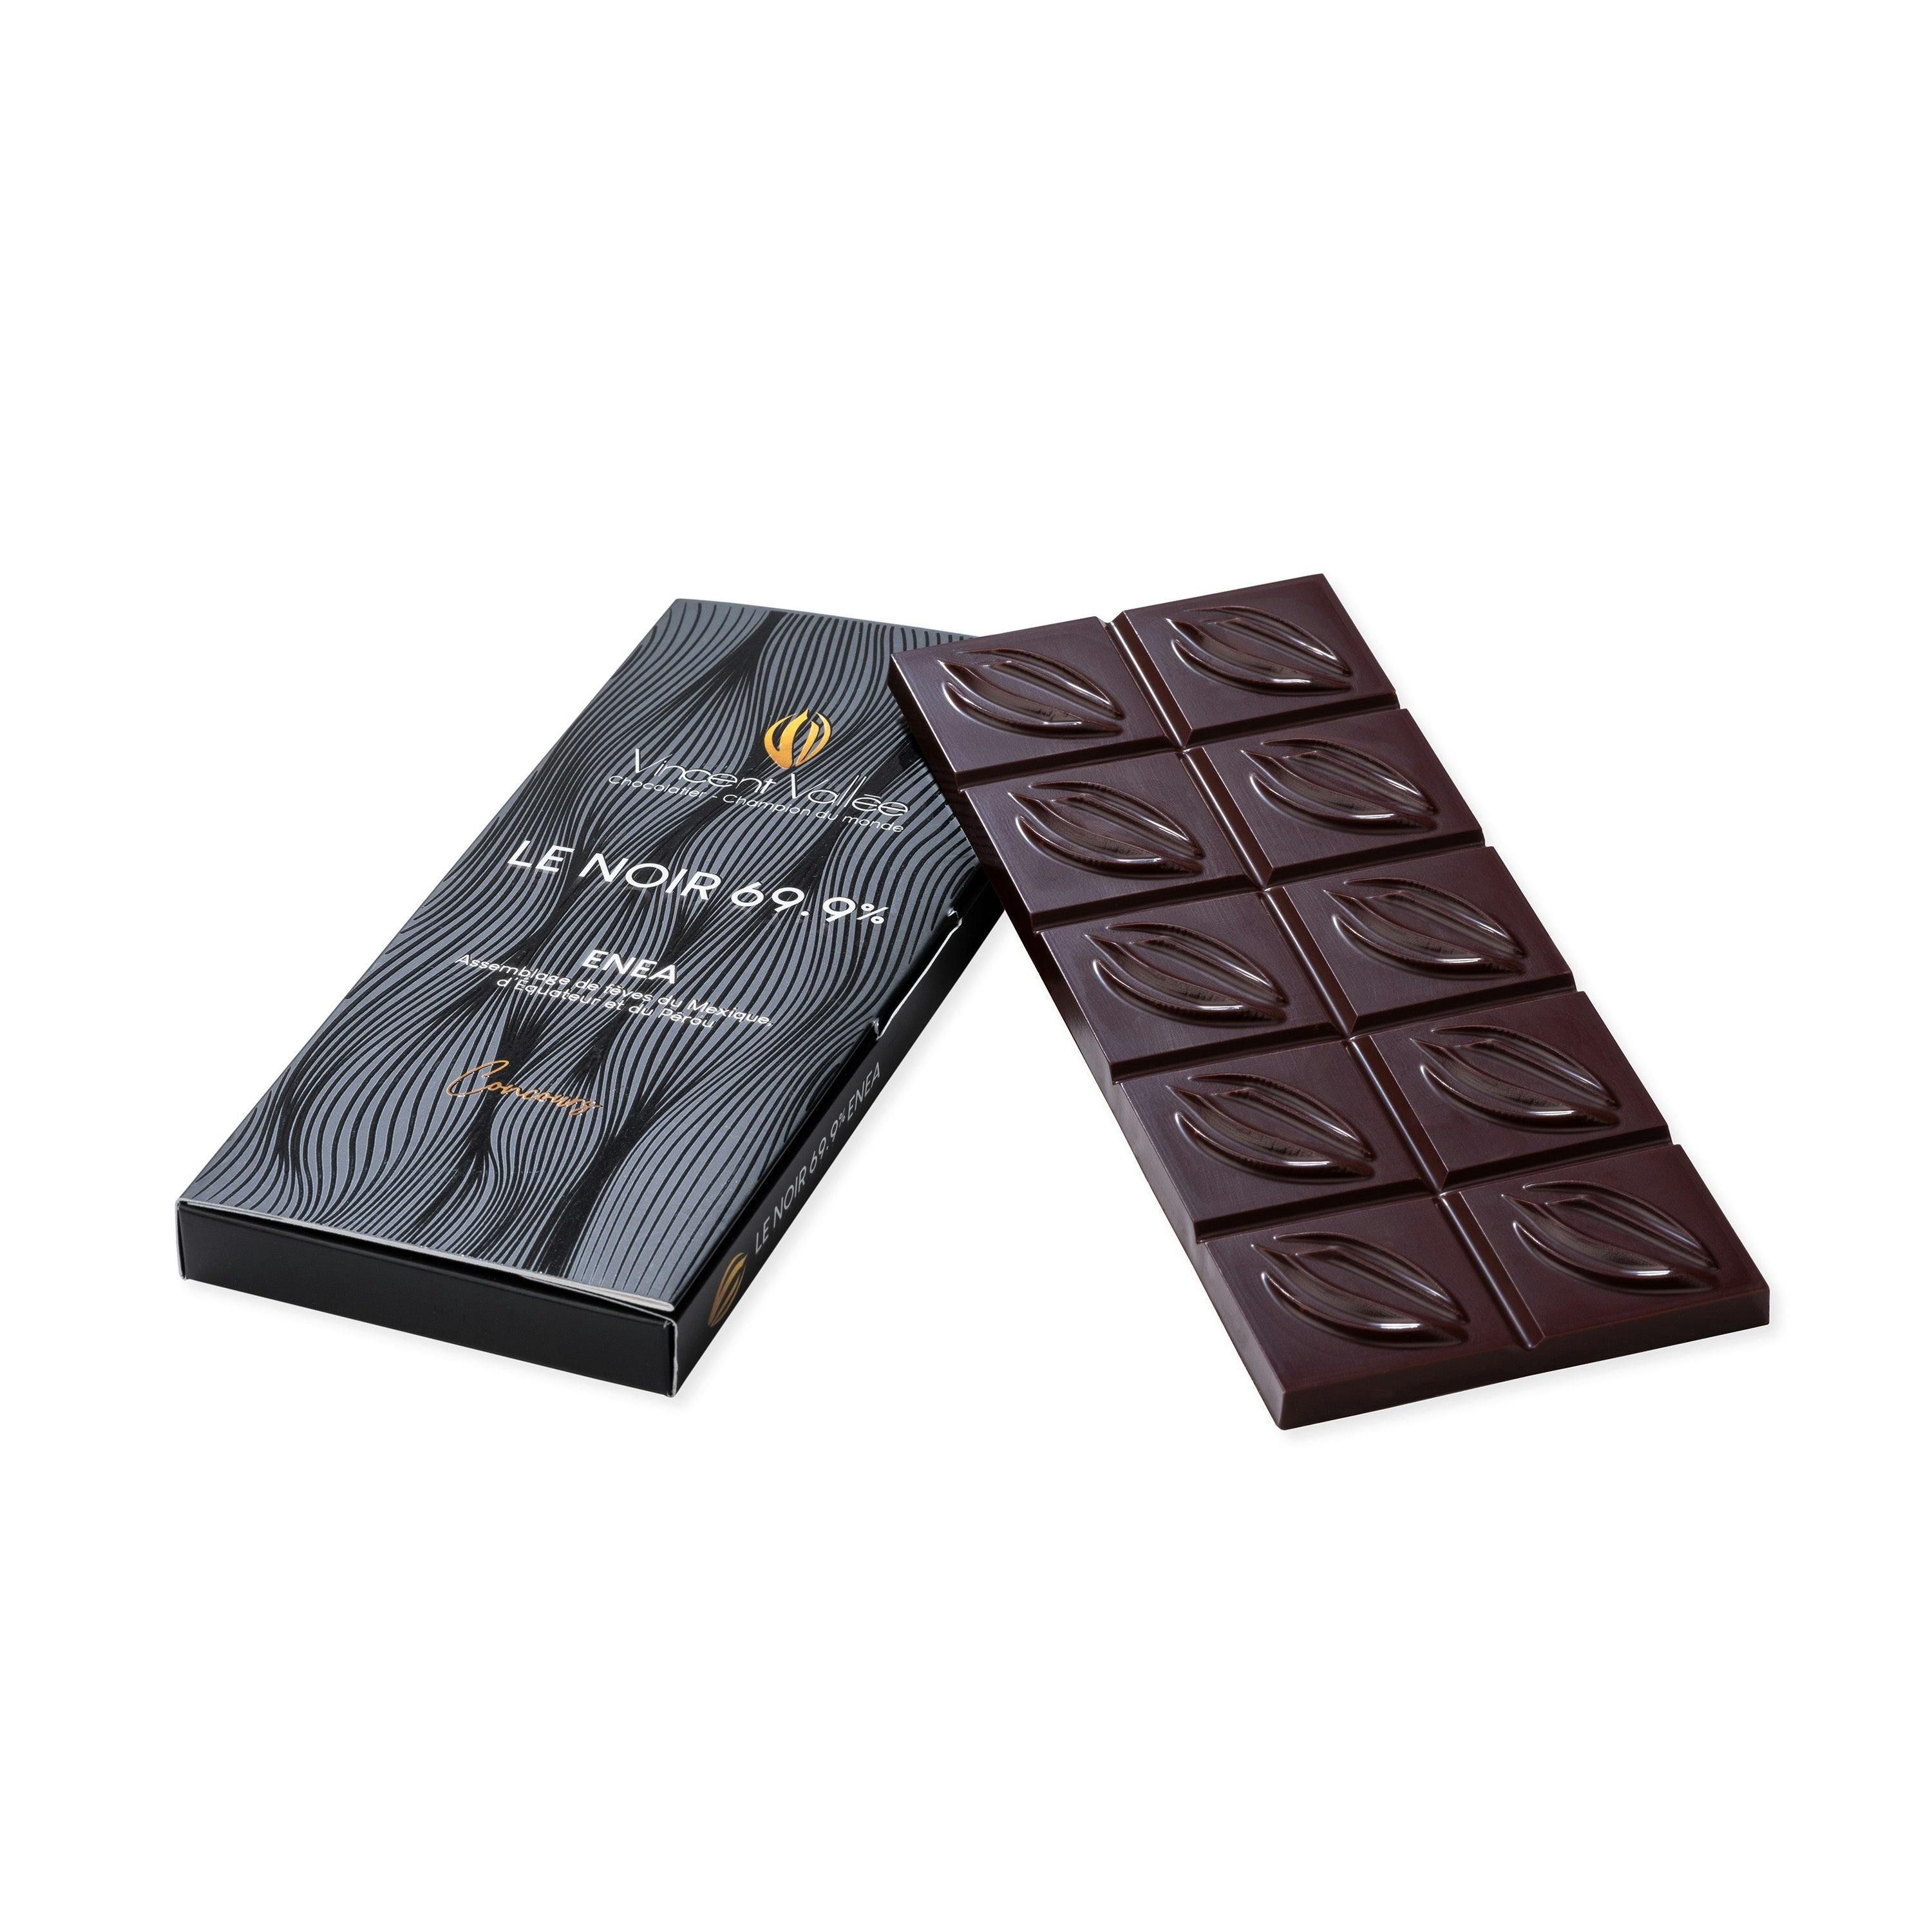 Enea 69.90% BIO CONCOURS - Vincent Vallée world champion chocolatier